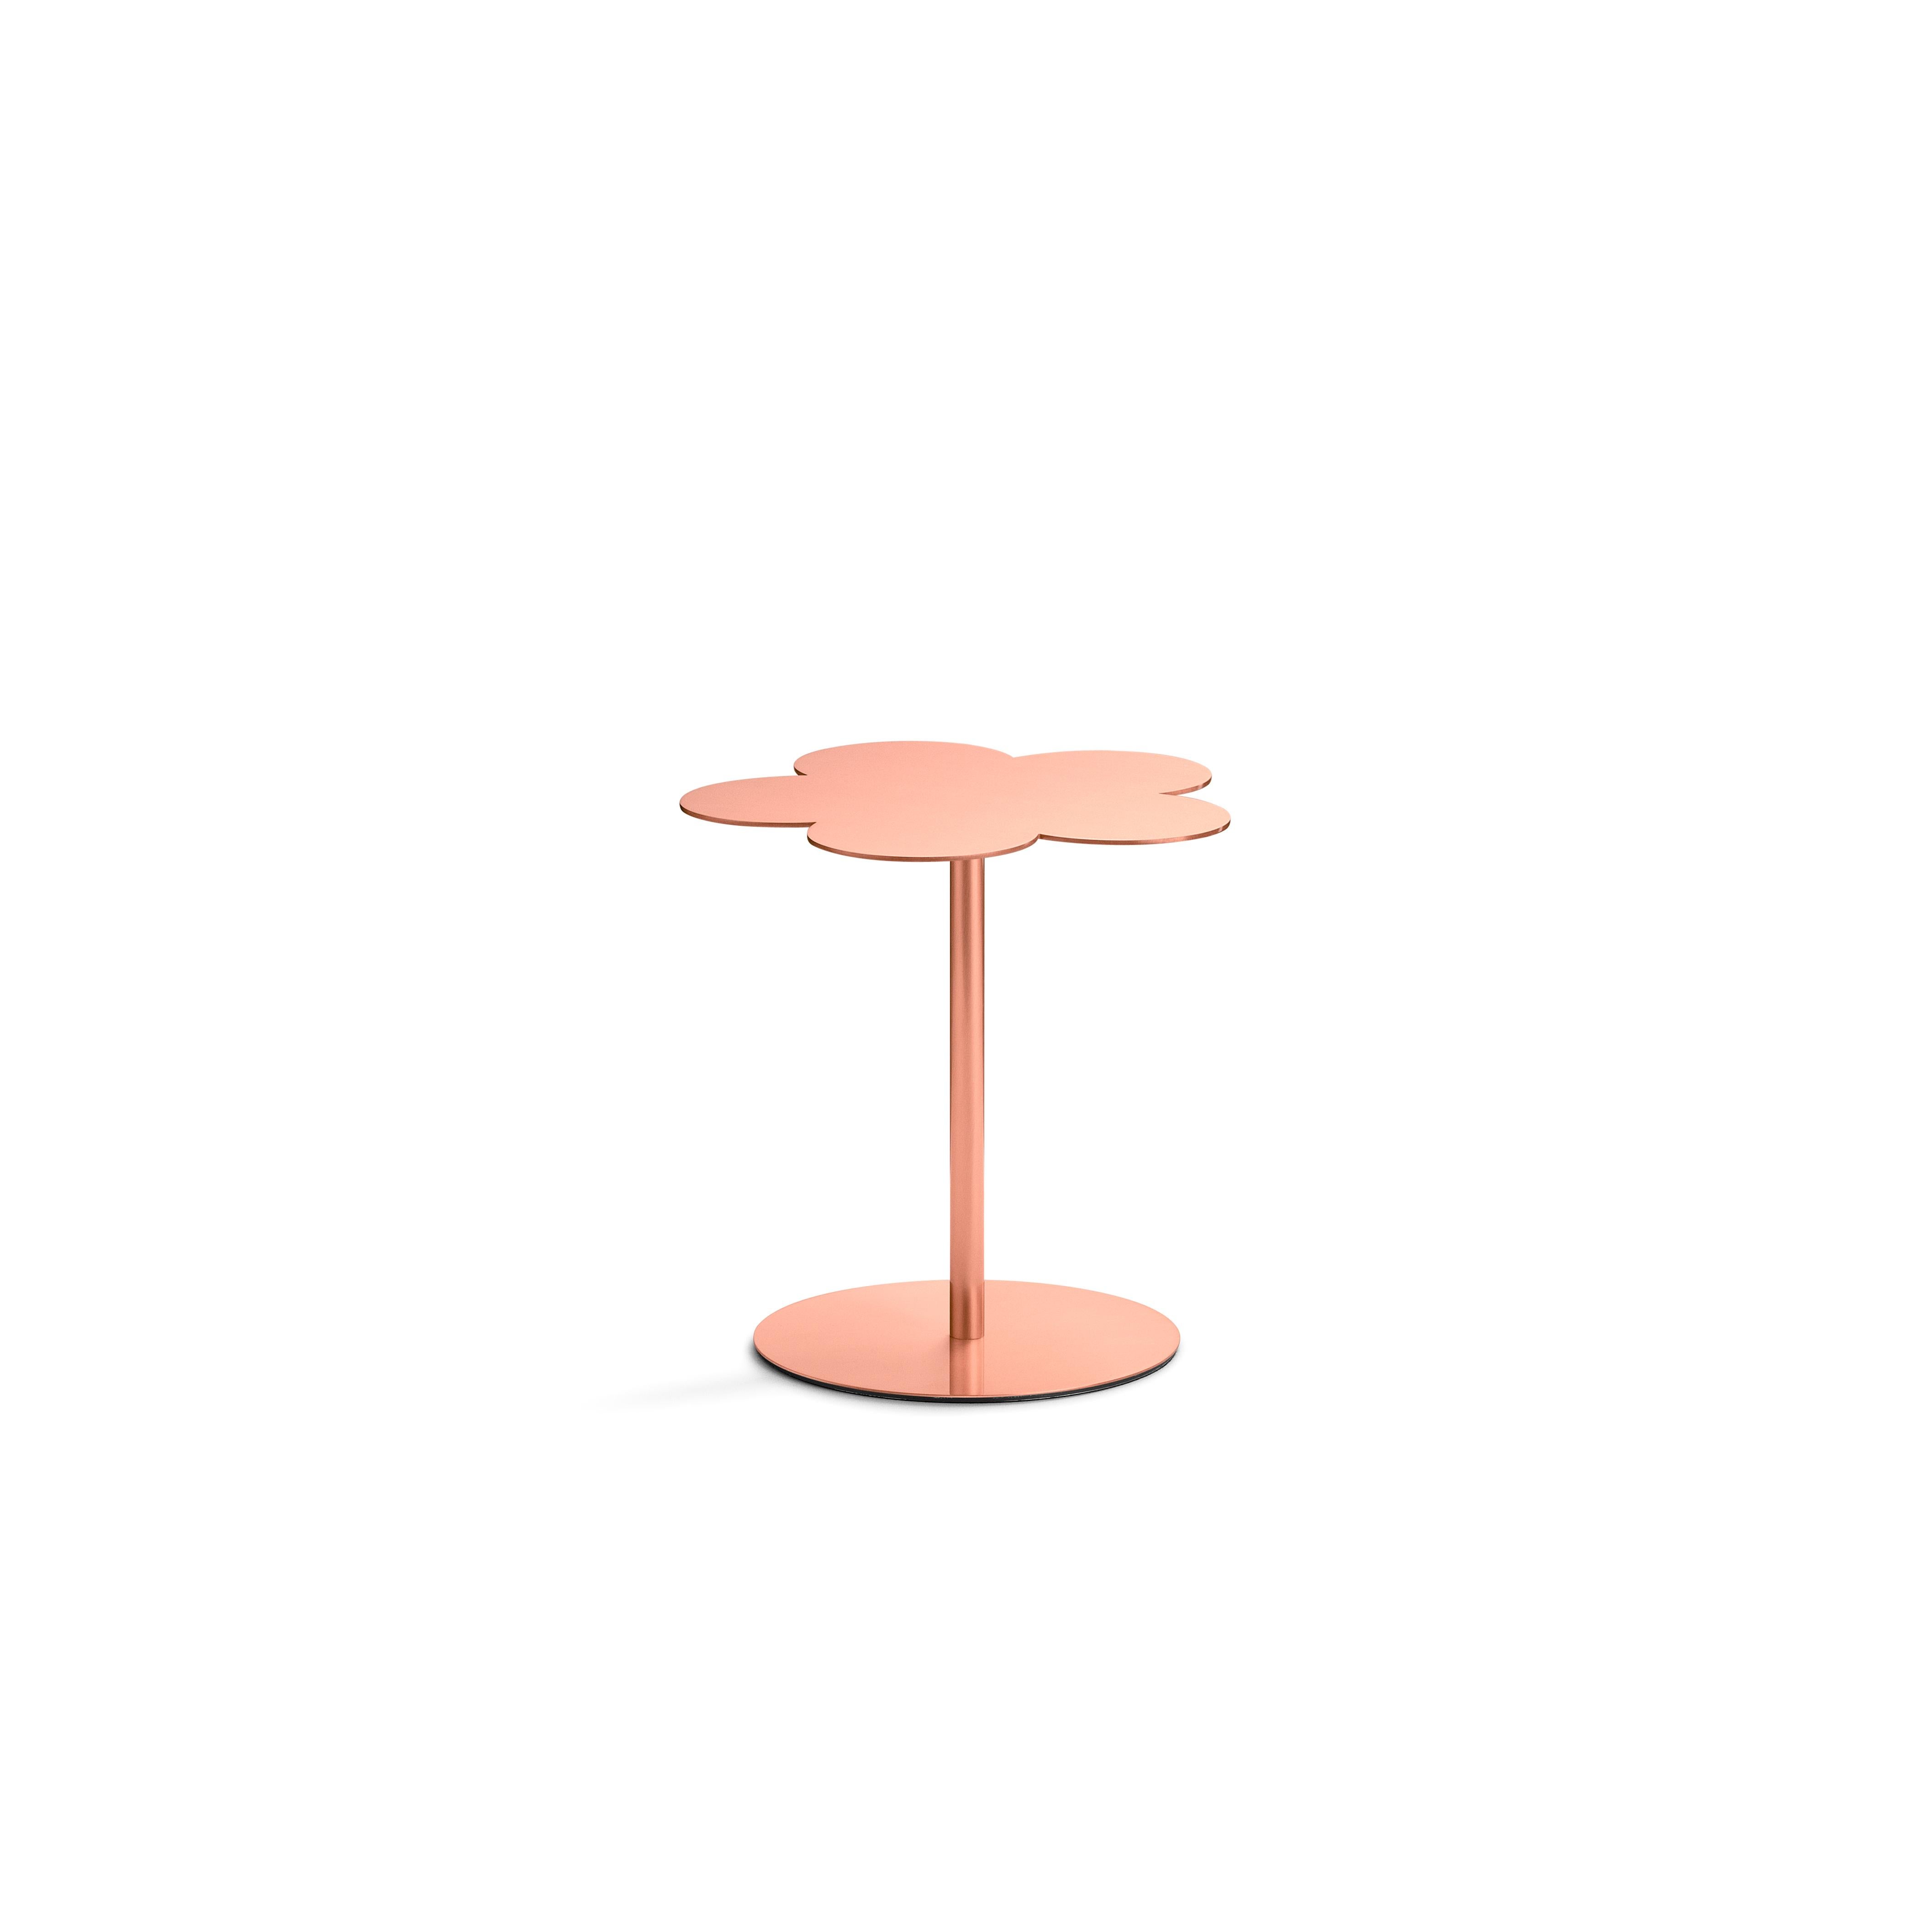 Petite table d'appoint en cuivre
L'élément naturel est au centre de ce projet de table basse dont la surface a la forme d'une fleur stylisée. Un triptyque d'éléments distincts qui reposent sur un pied circulaire et qui, étant donné les différentes